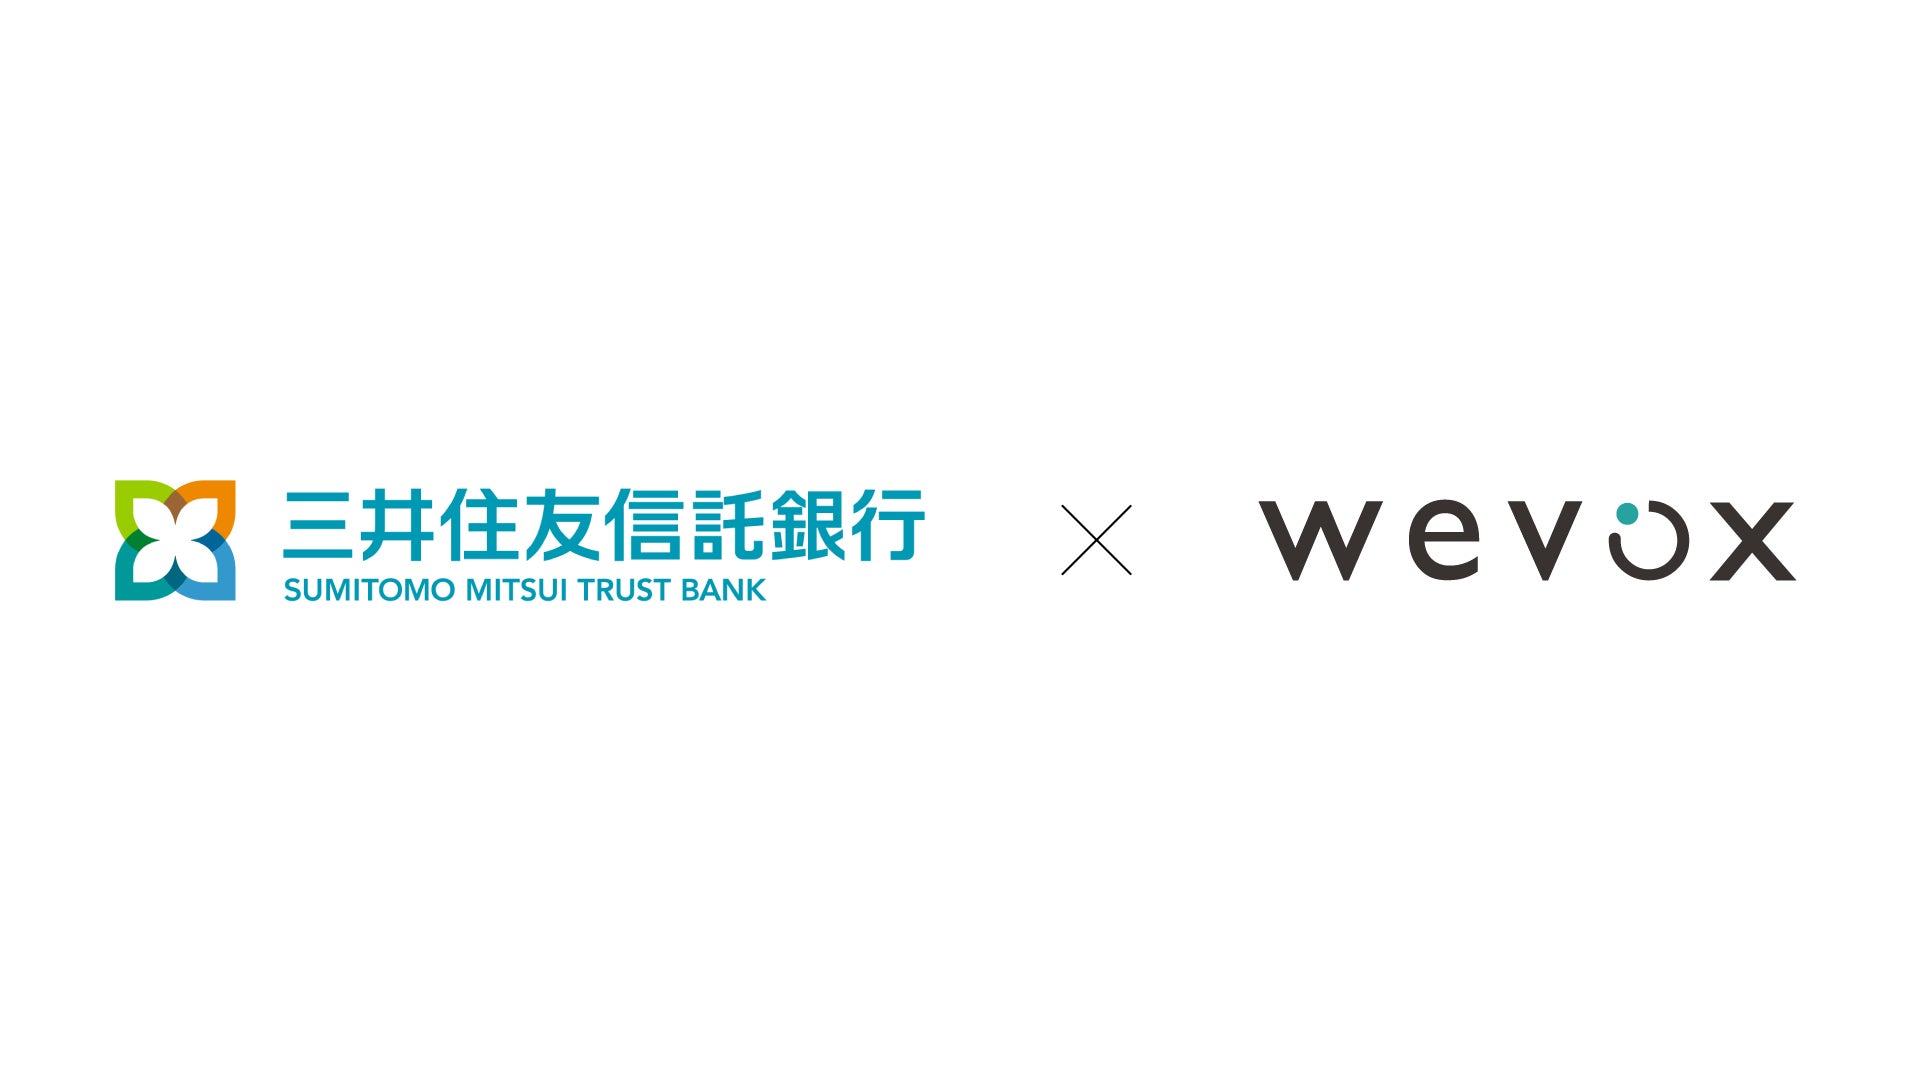 【三井住友信託銀行】組織力向上プラットフォーム「Wevox（ウィボックス）」の新プランを導入